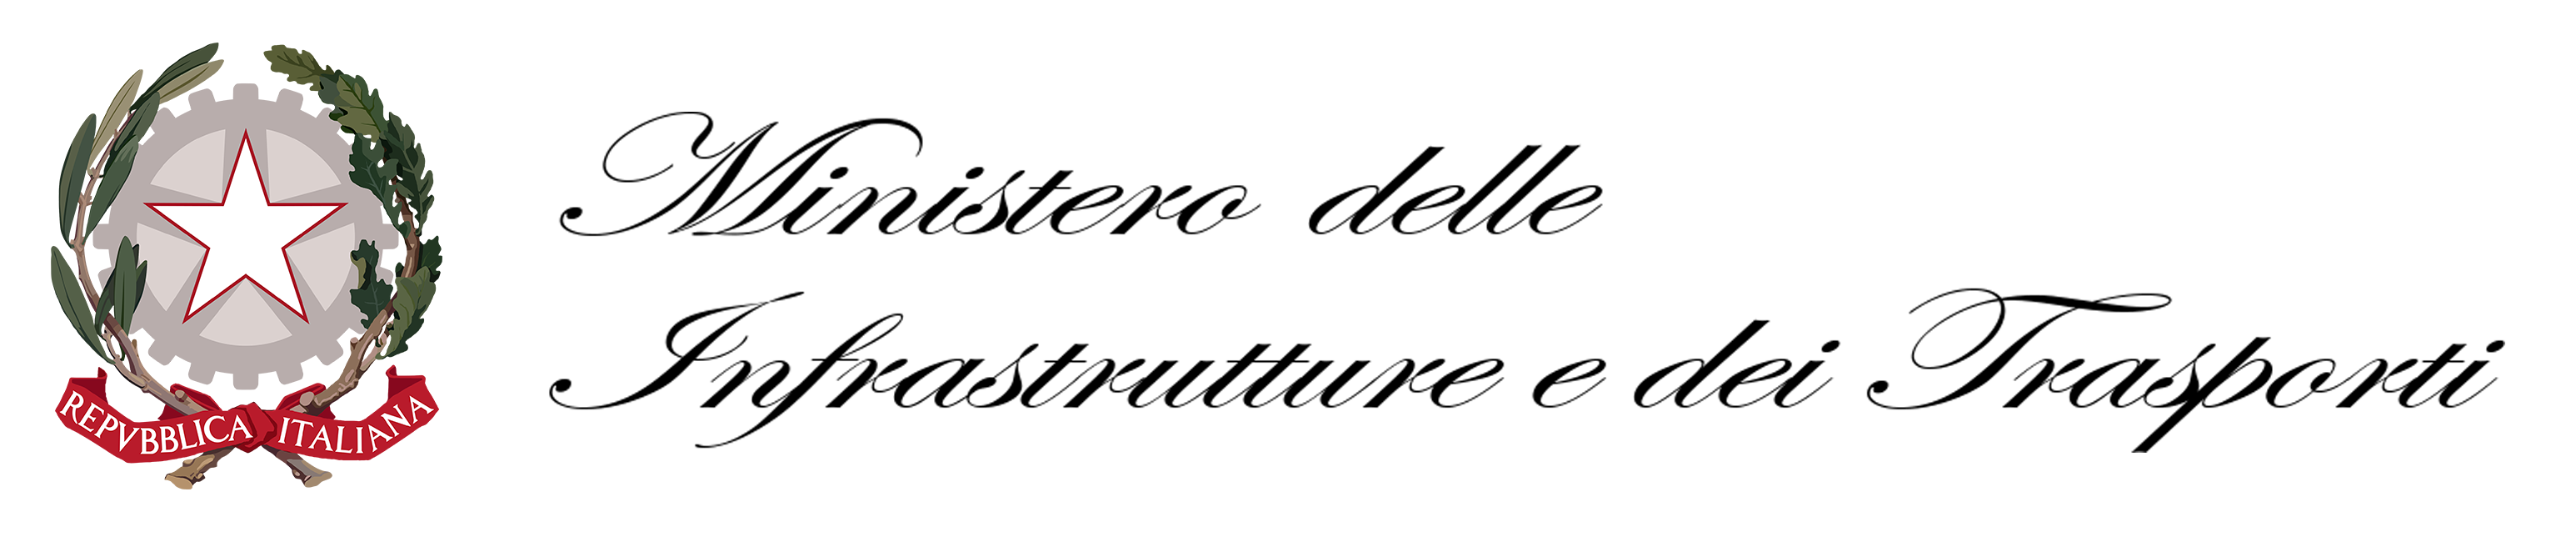 logo-mit